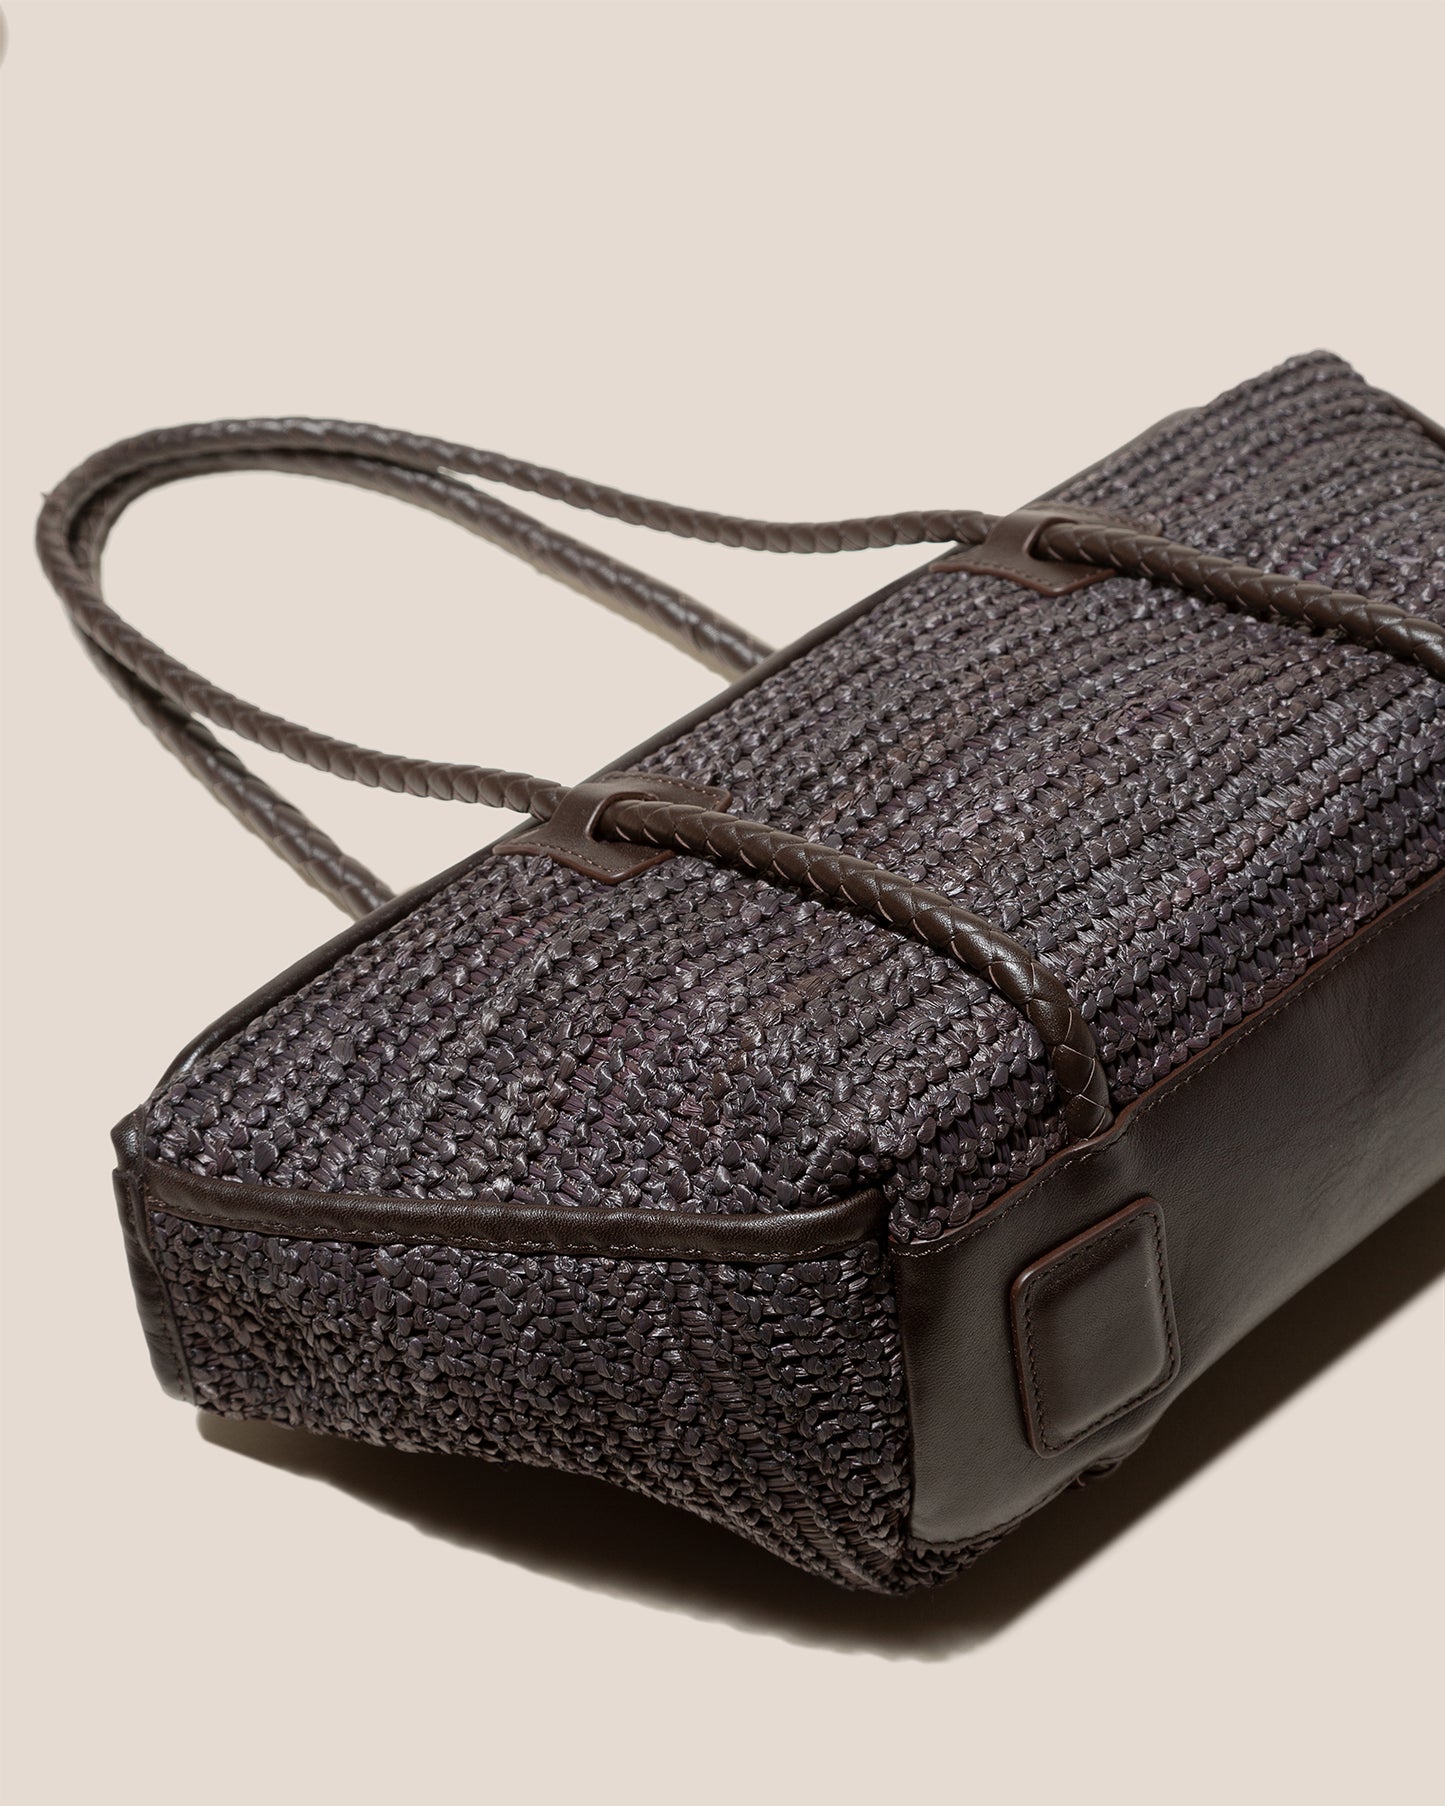 FORNA RAFFIA - Leather Framed Shoulder Bag